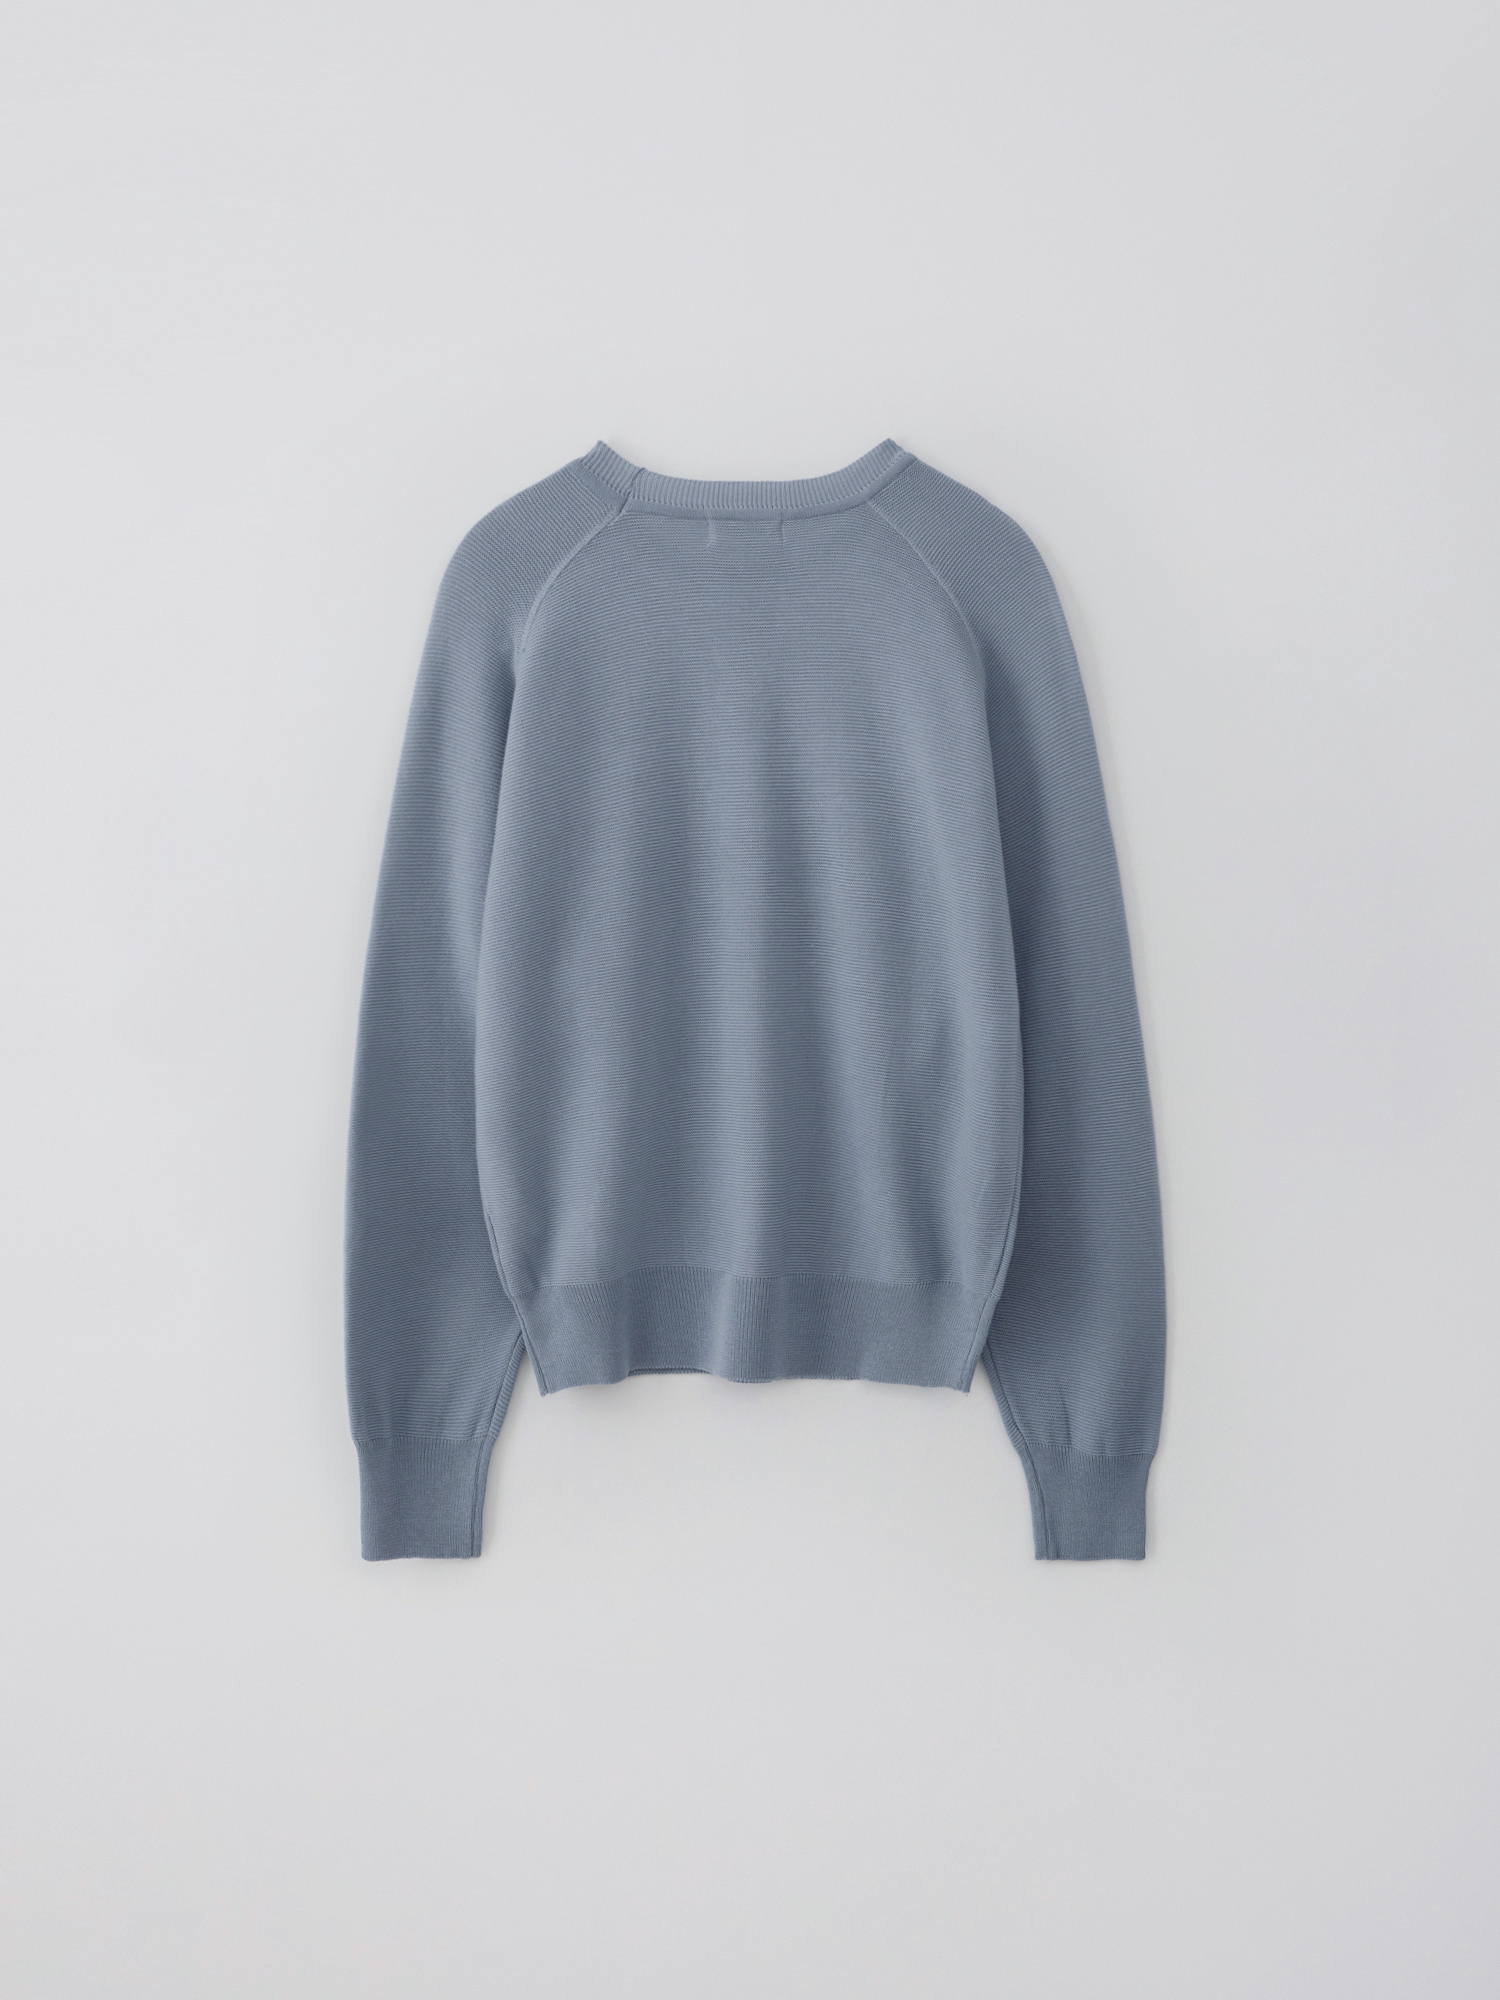 Knitted sweat shirt (blue gray)